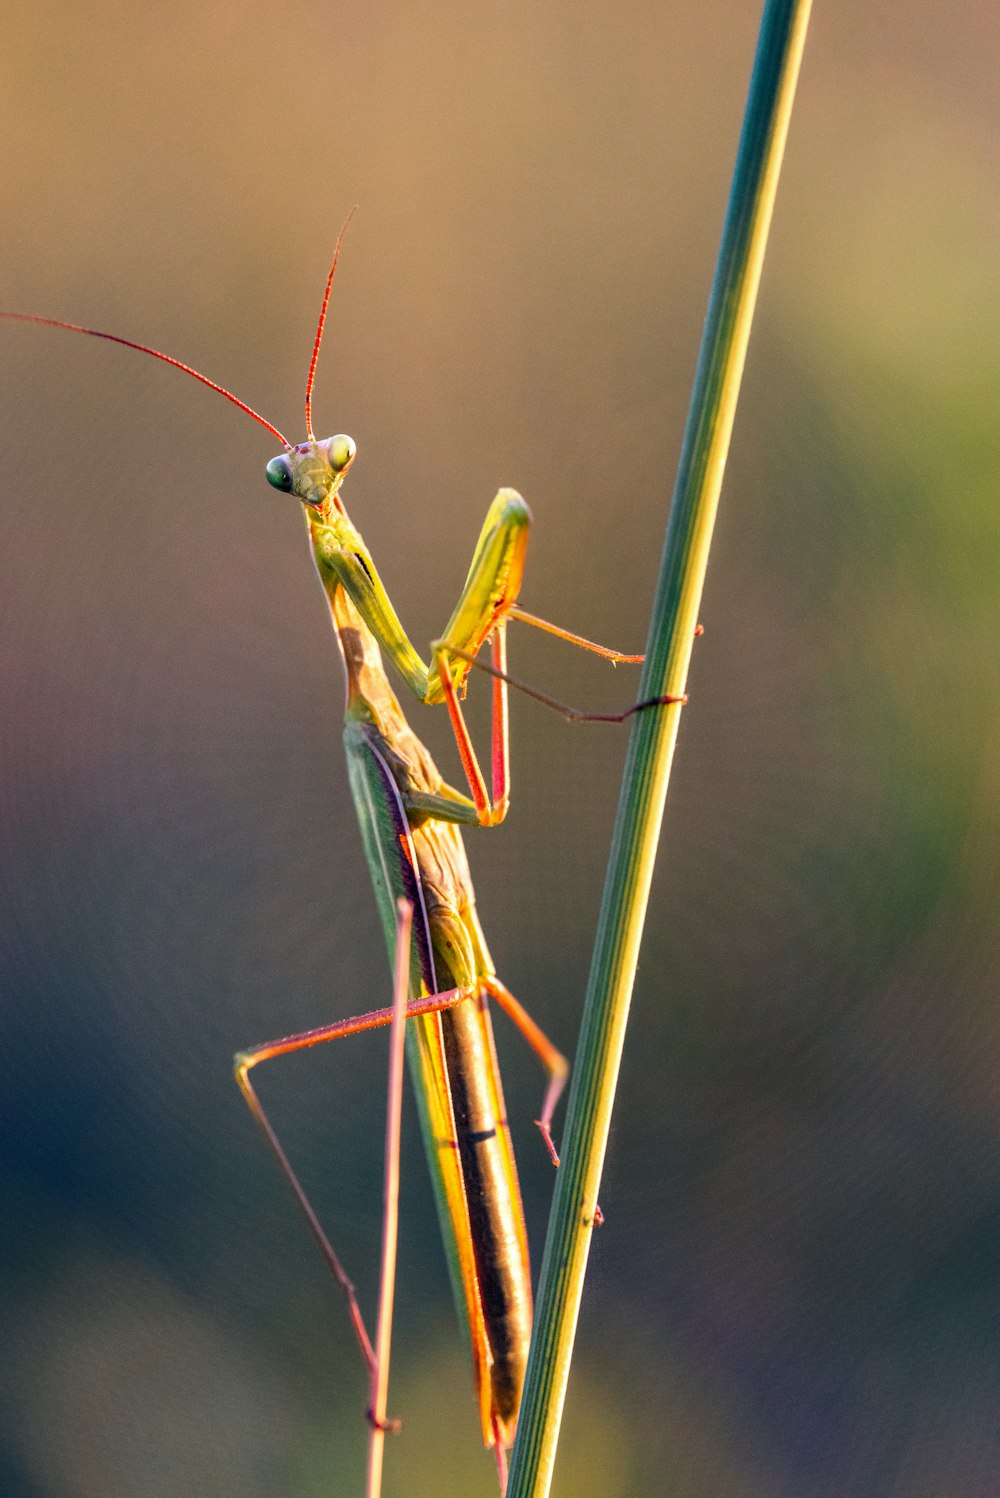 Mantis religiosa verde en palo marrón en fotografía de primer plano durante el día